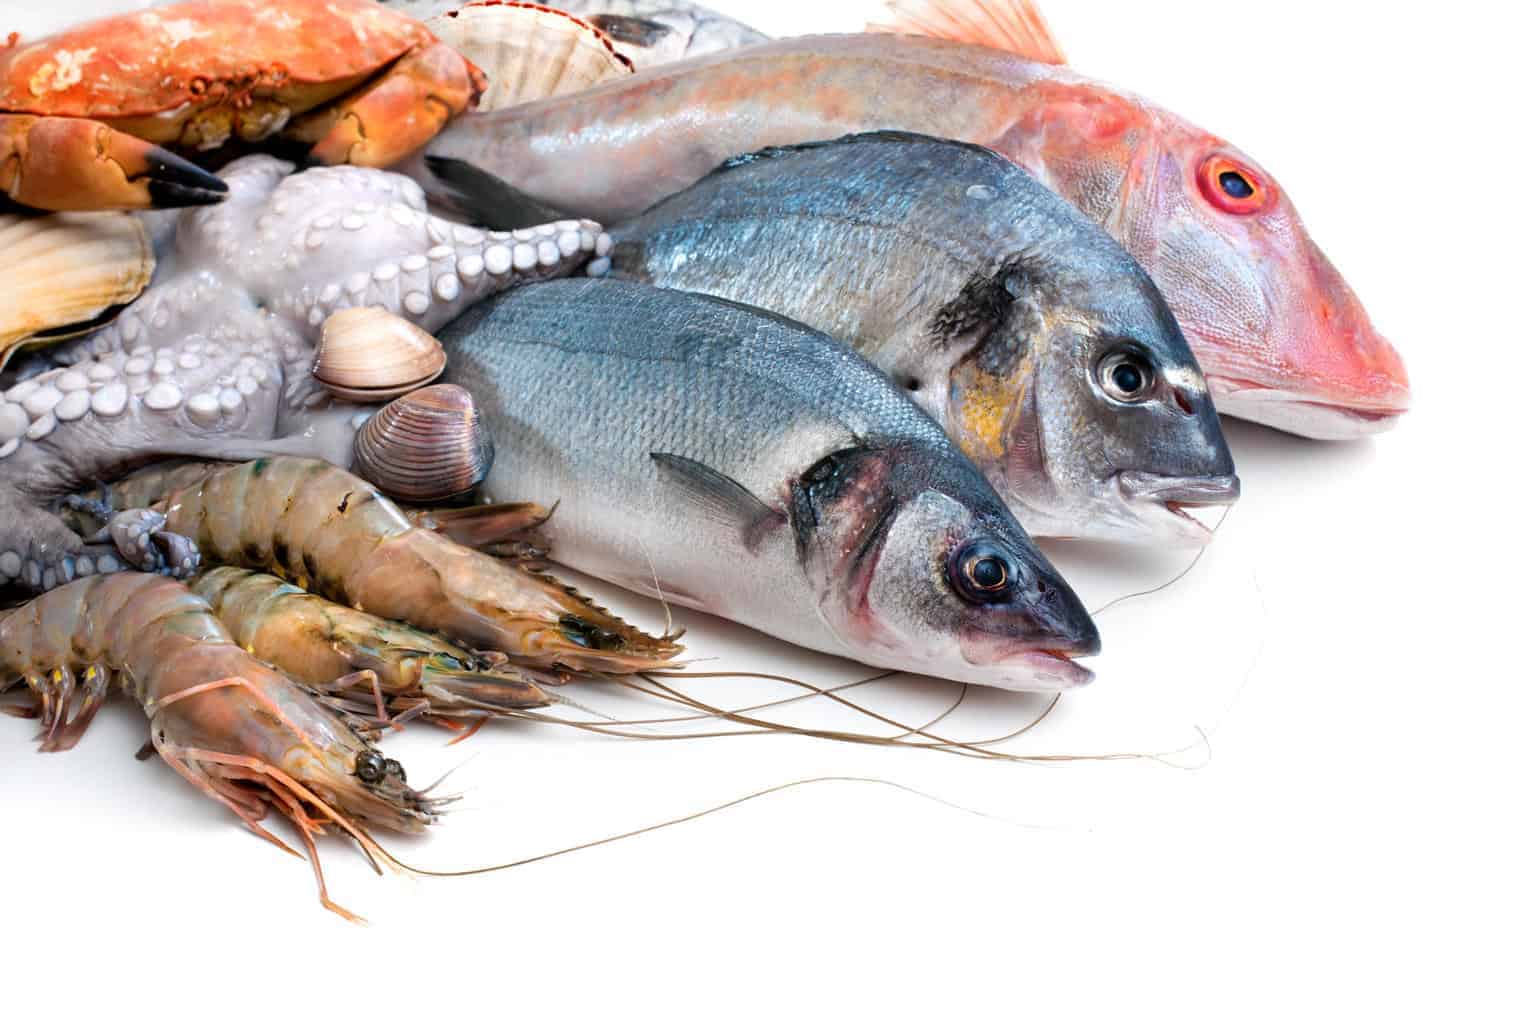 Pescados y mariscos: Cómo seleccionarlos y servirlos de manera segura